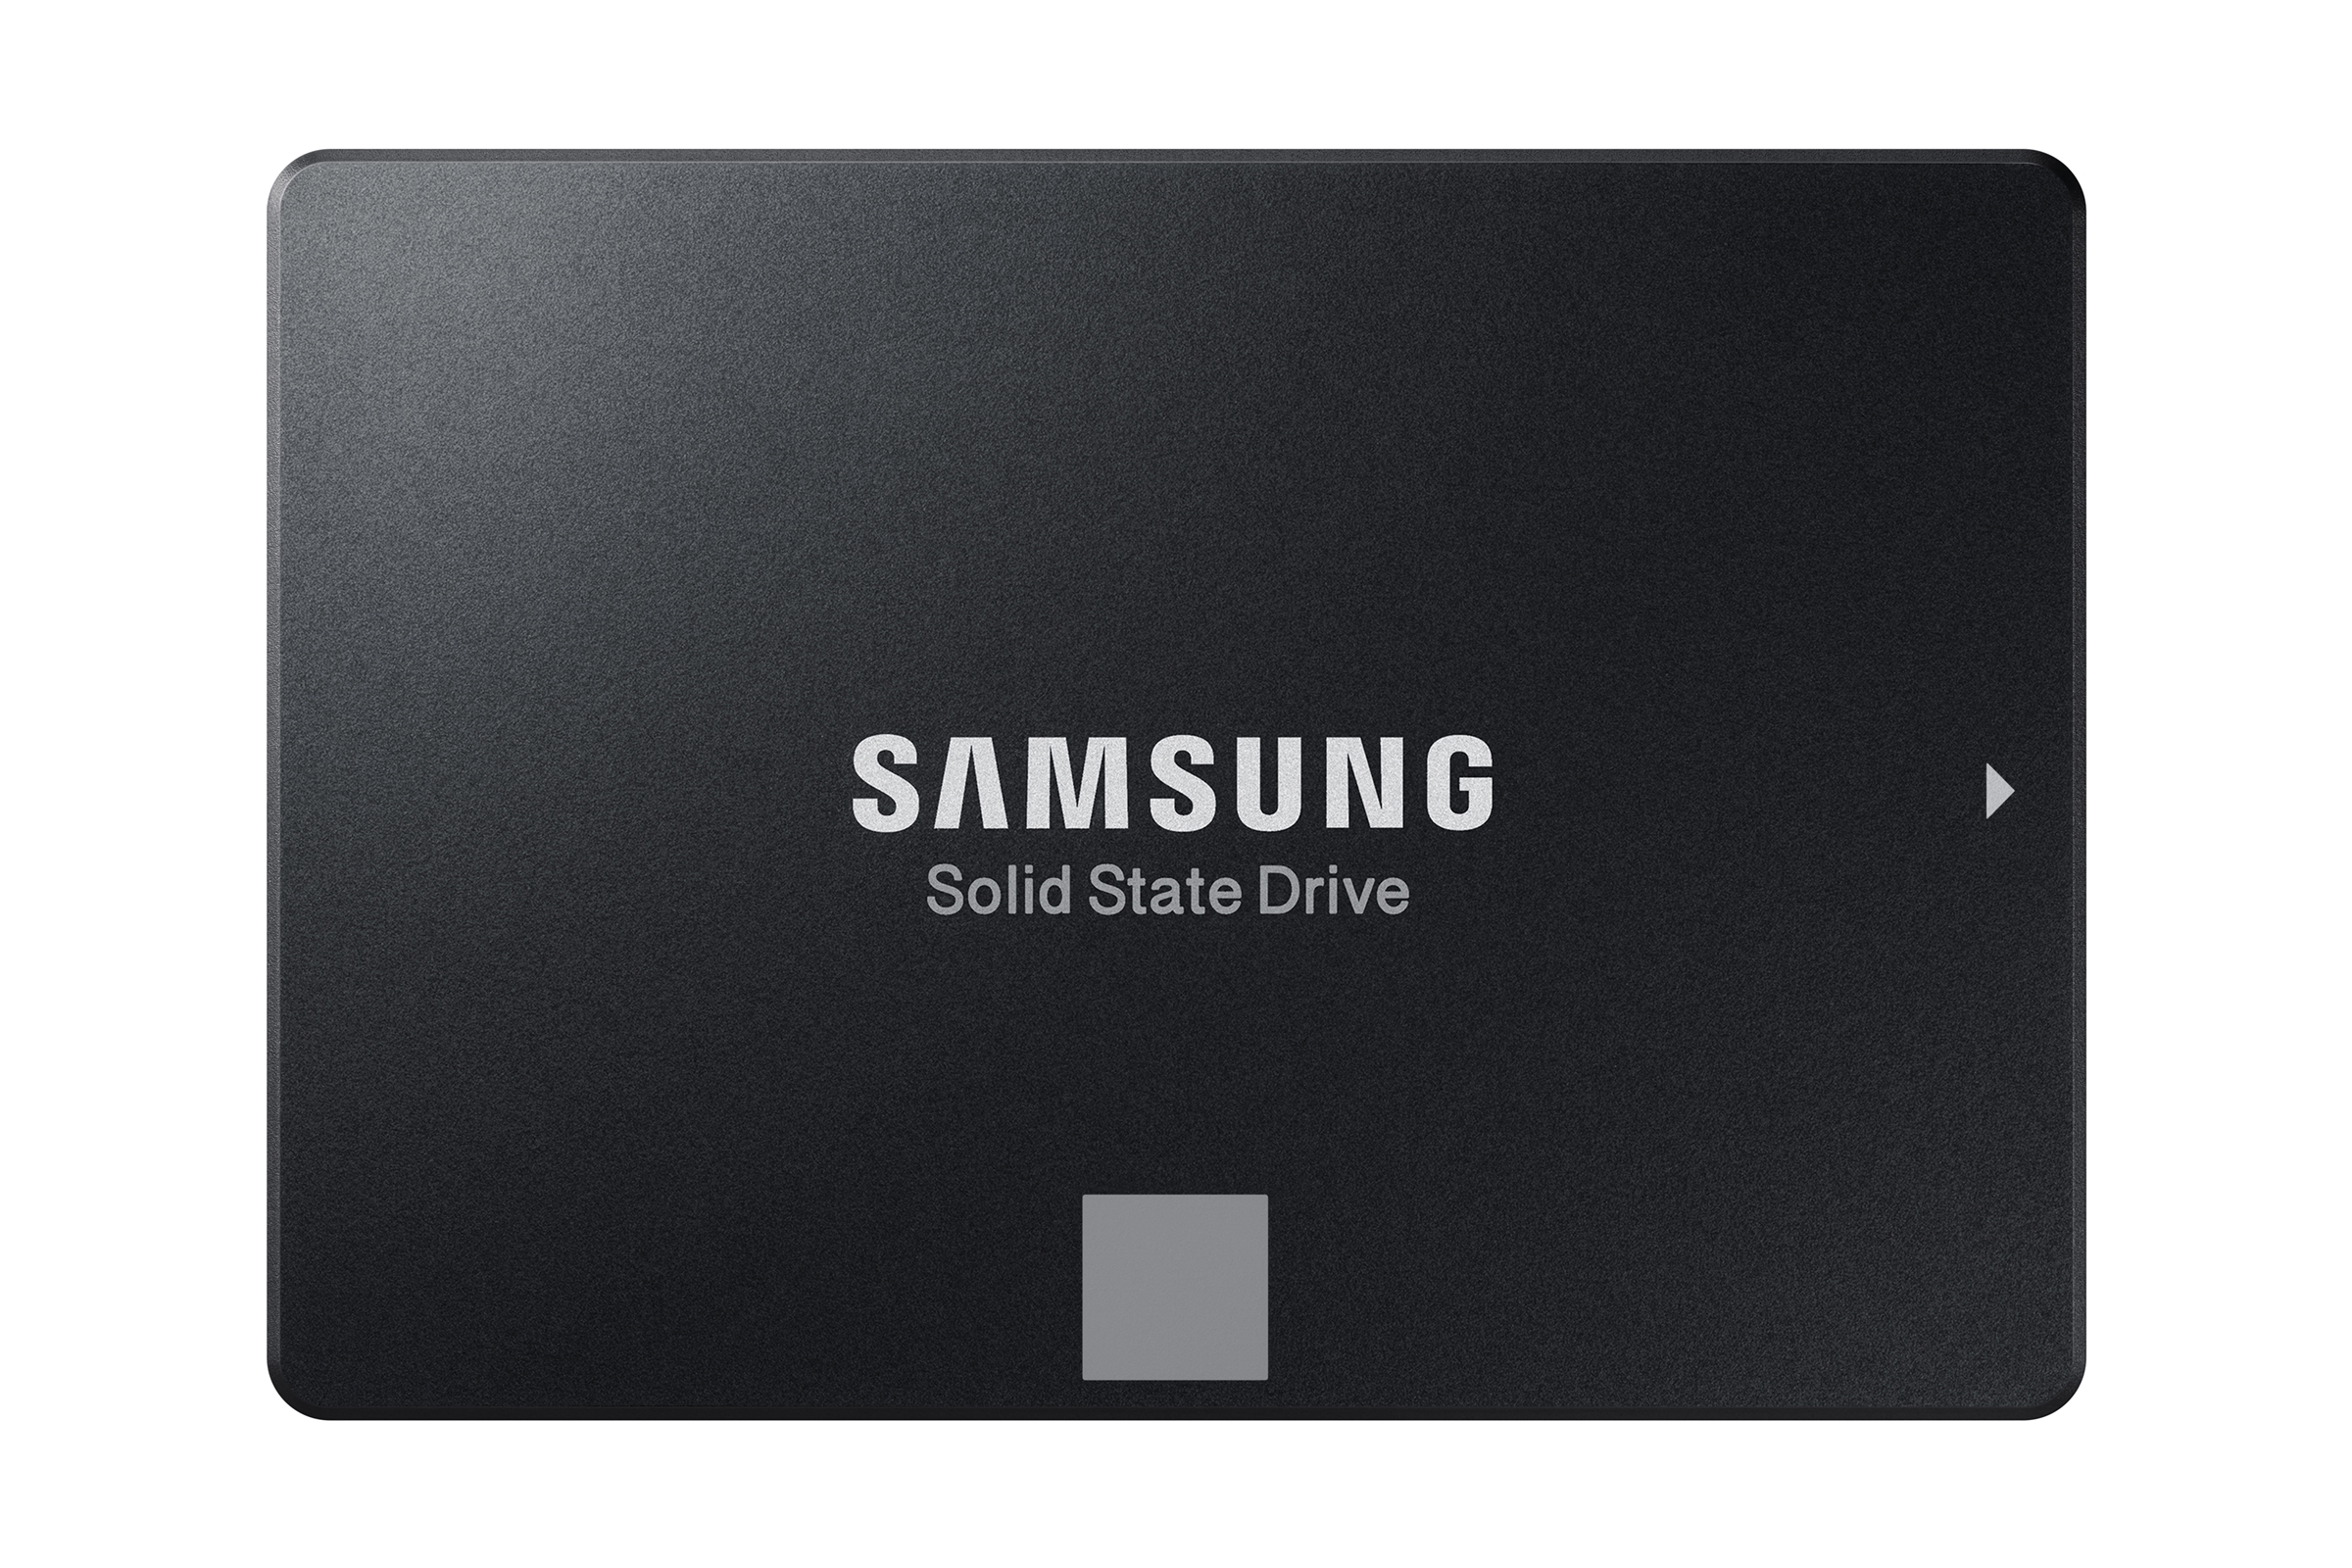 Immagine pubblicata in relazione al seguente contenuto: Samsung lancia ufficialmente le linee di drive SSD 860 Pro e 860 EVO | Nome immagine: news27753_Samsung-860-Pro-860-EVO_6.jpg